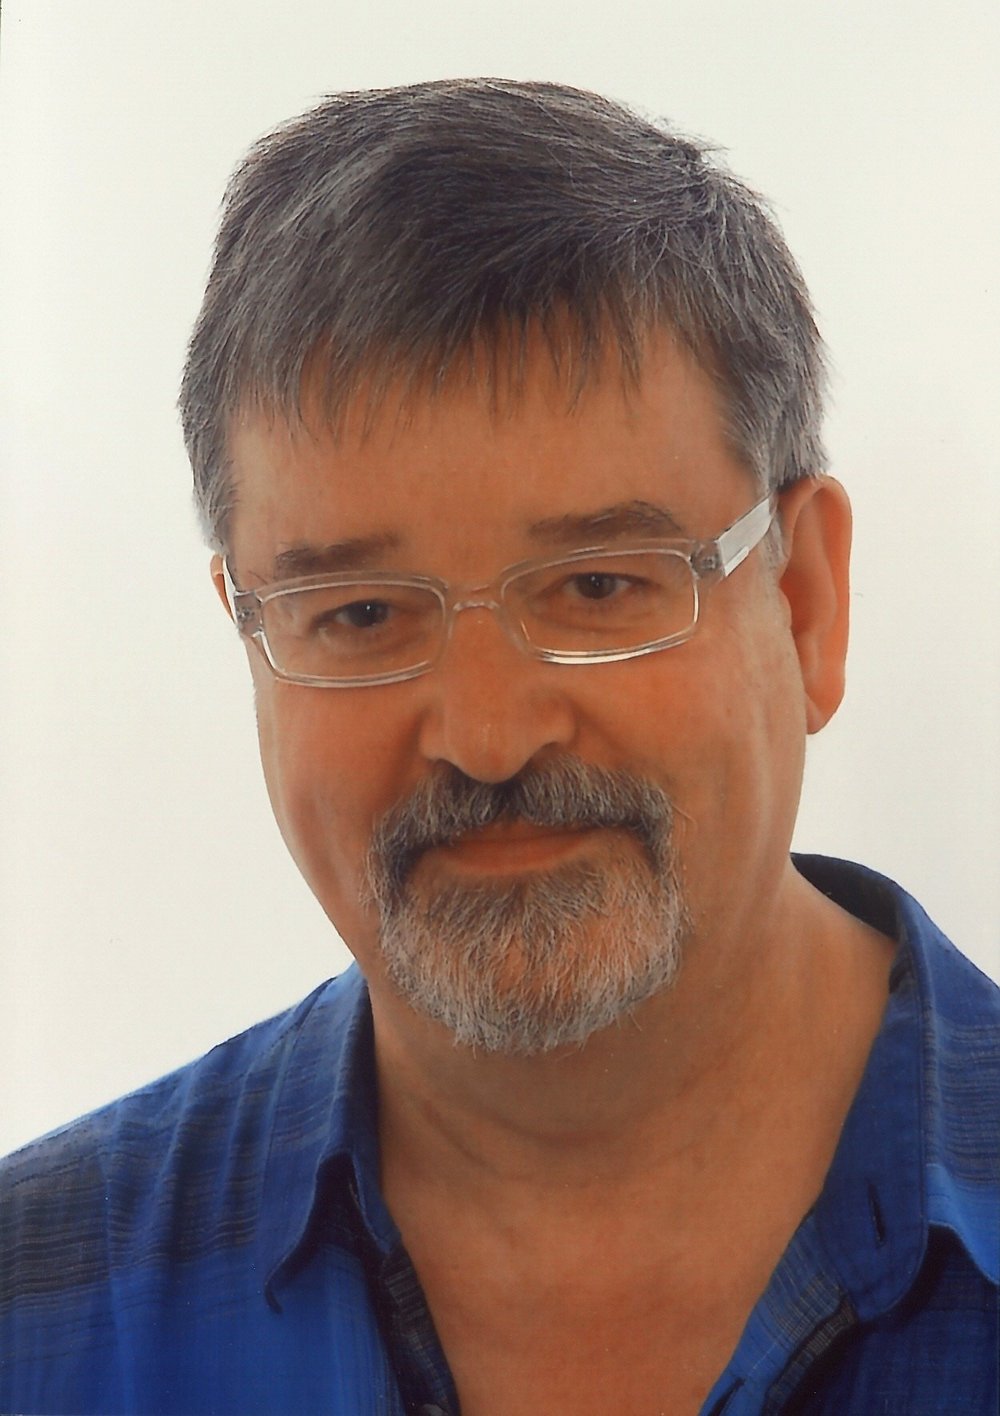 Jörg Engelmann